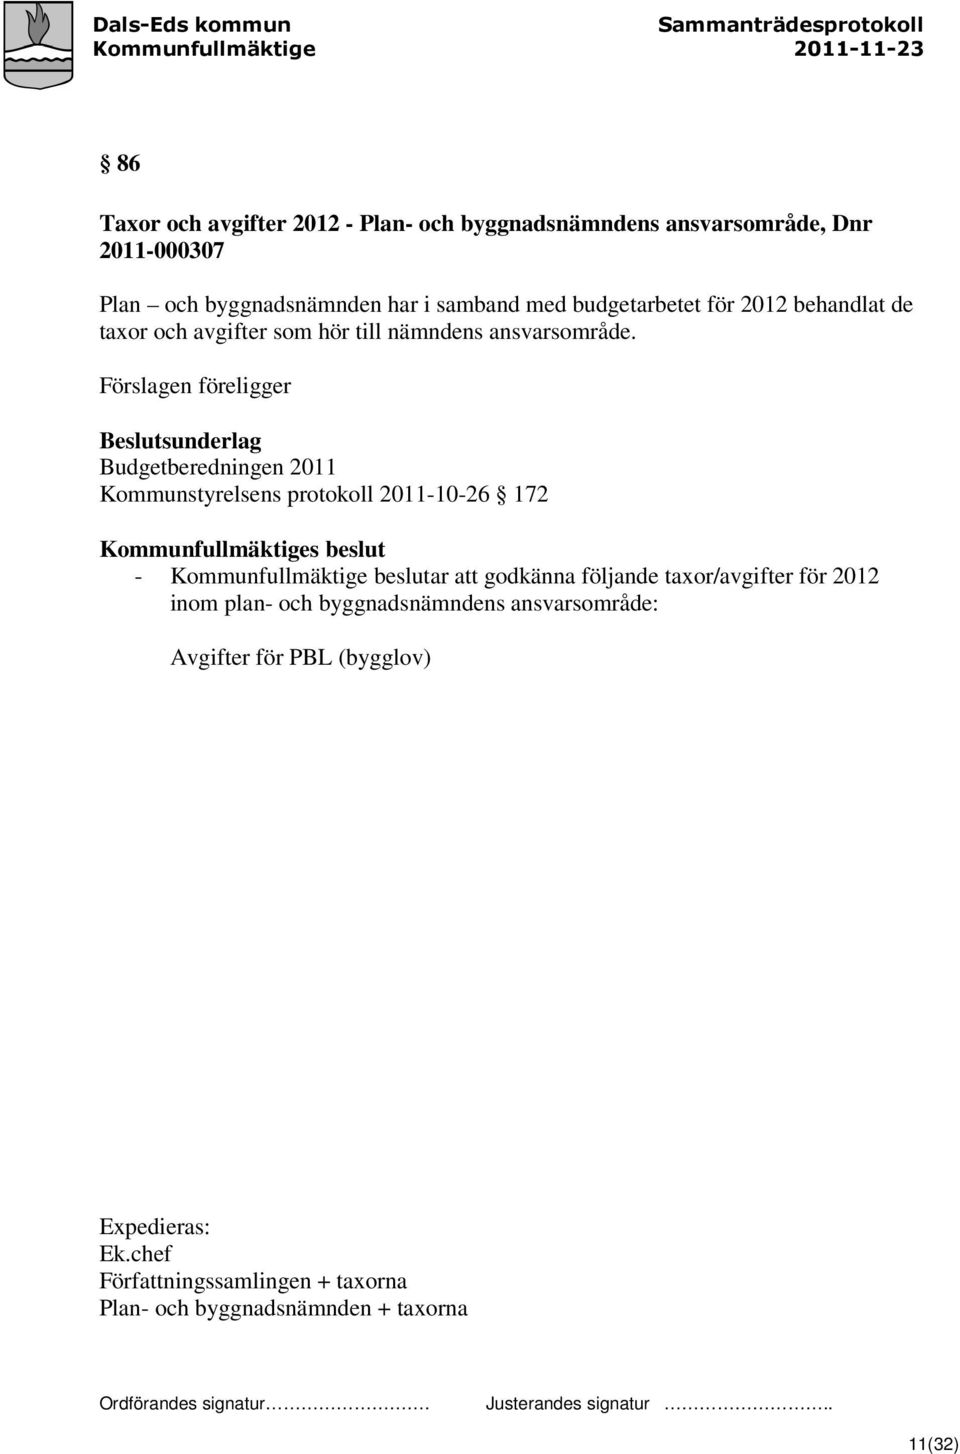 Förslagen föreligger Beslutsunderlag Budgetberedningen 2011 Kommunstyrelsens protokoll 2011-10-26 172 - Kommunfullmäktige beslutar att